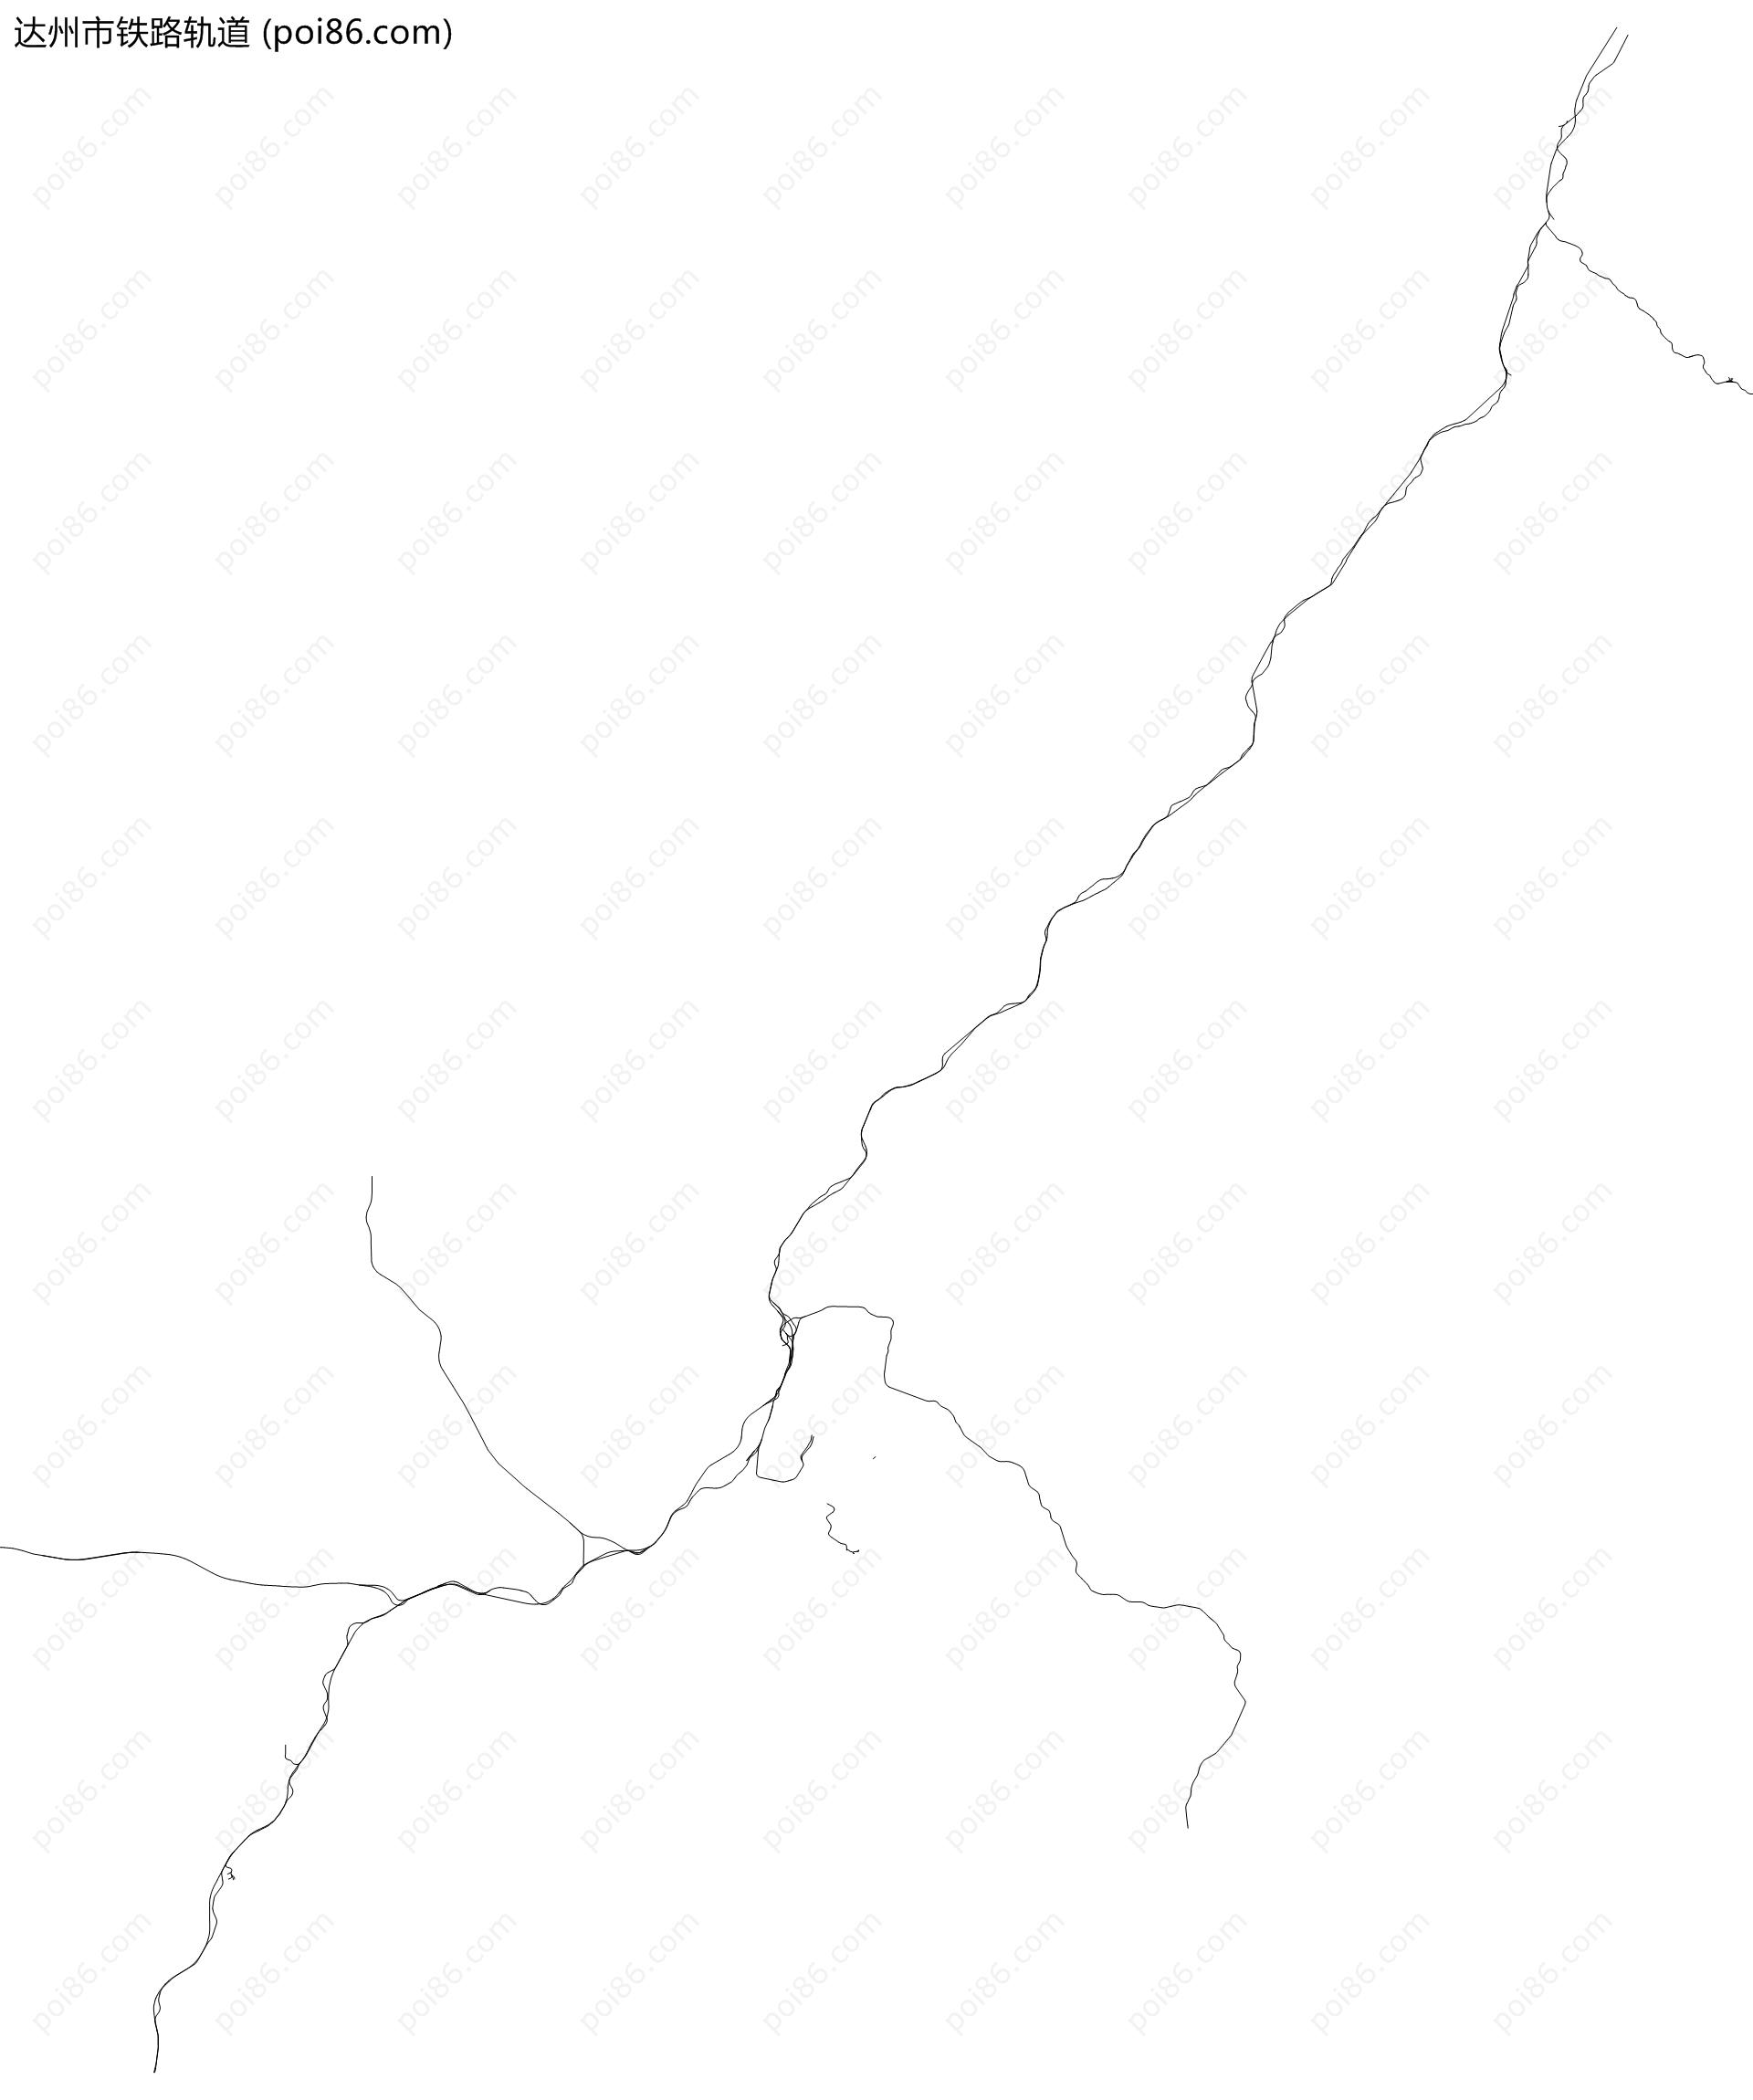 达州市铁路轨道地图